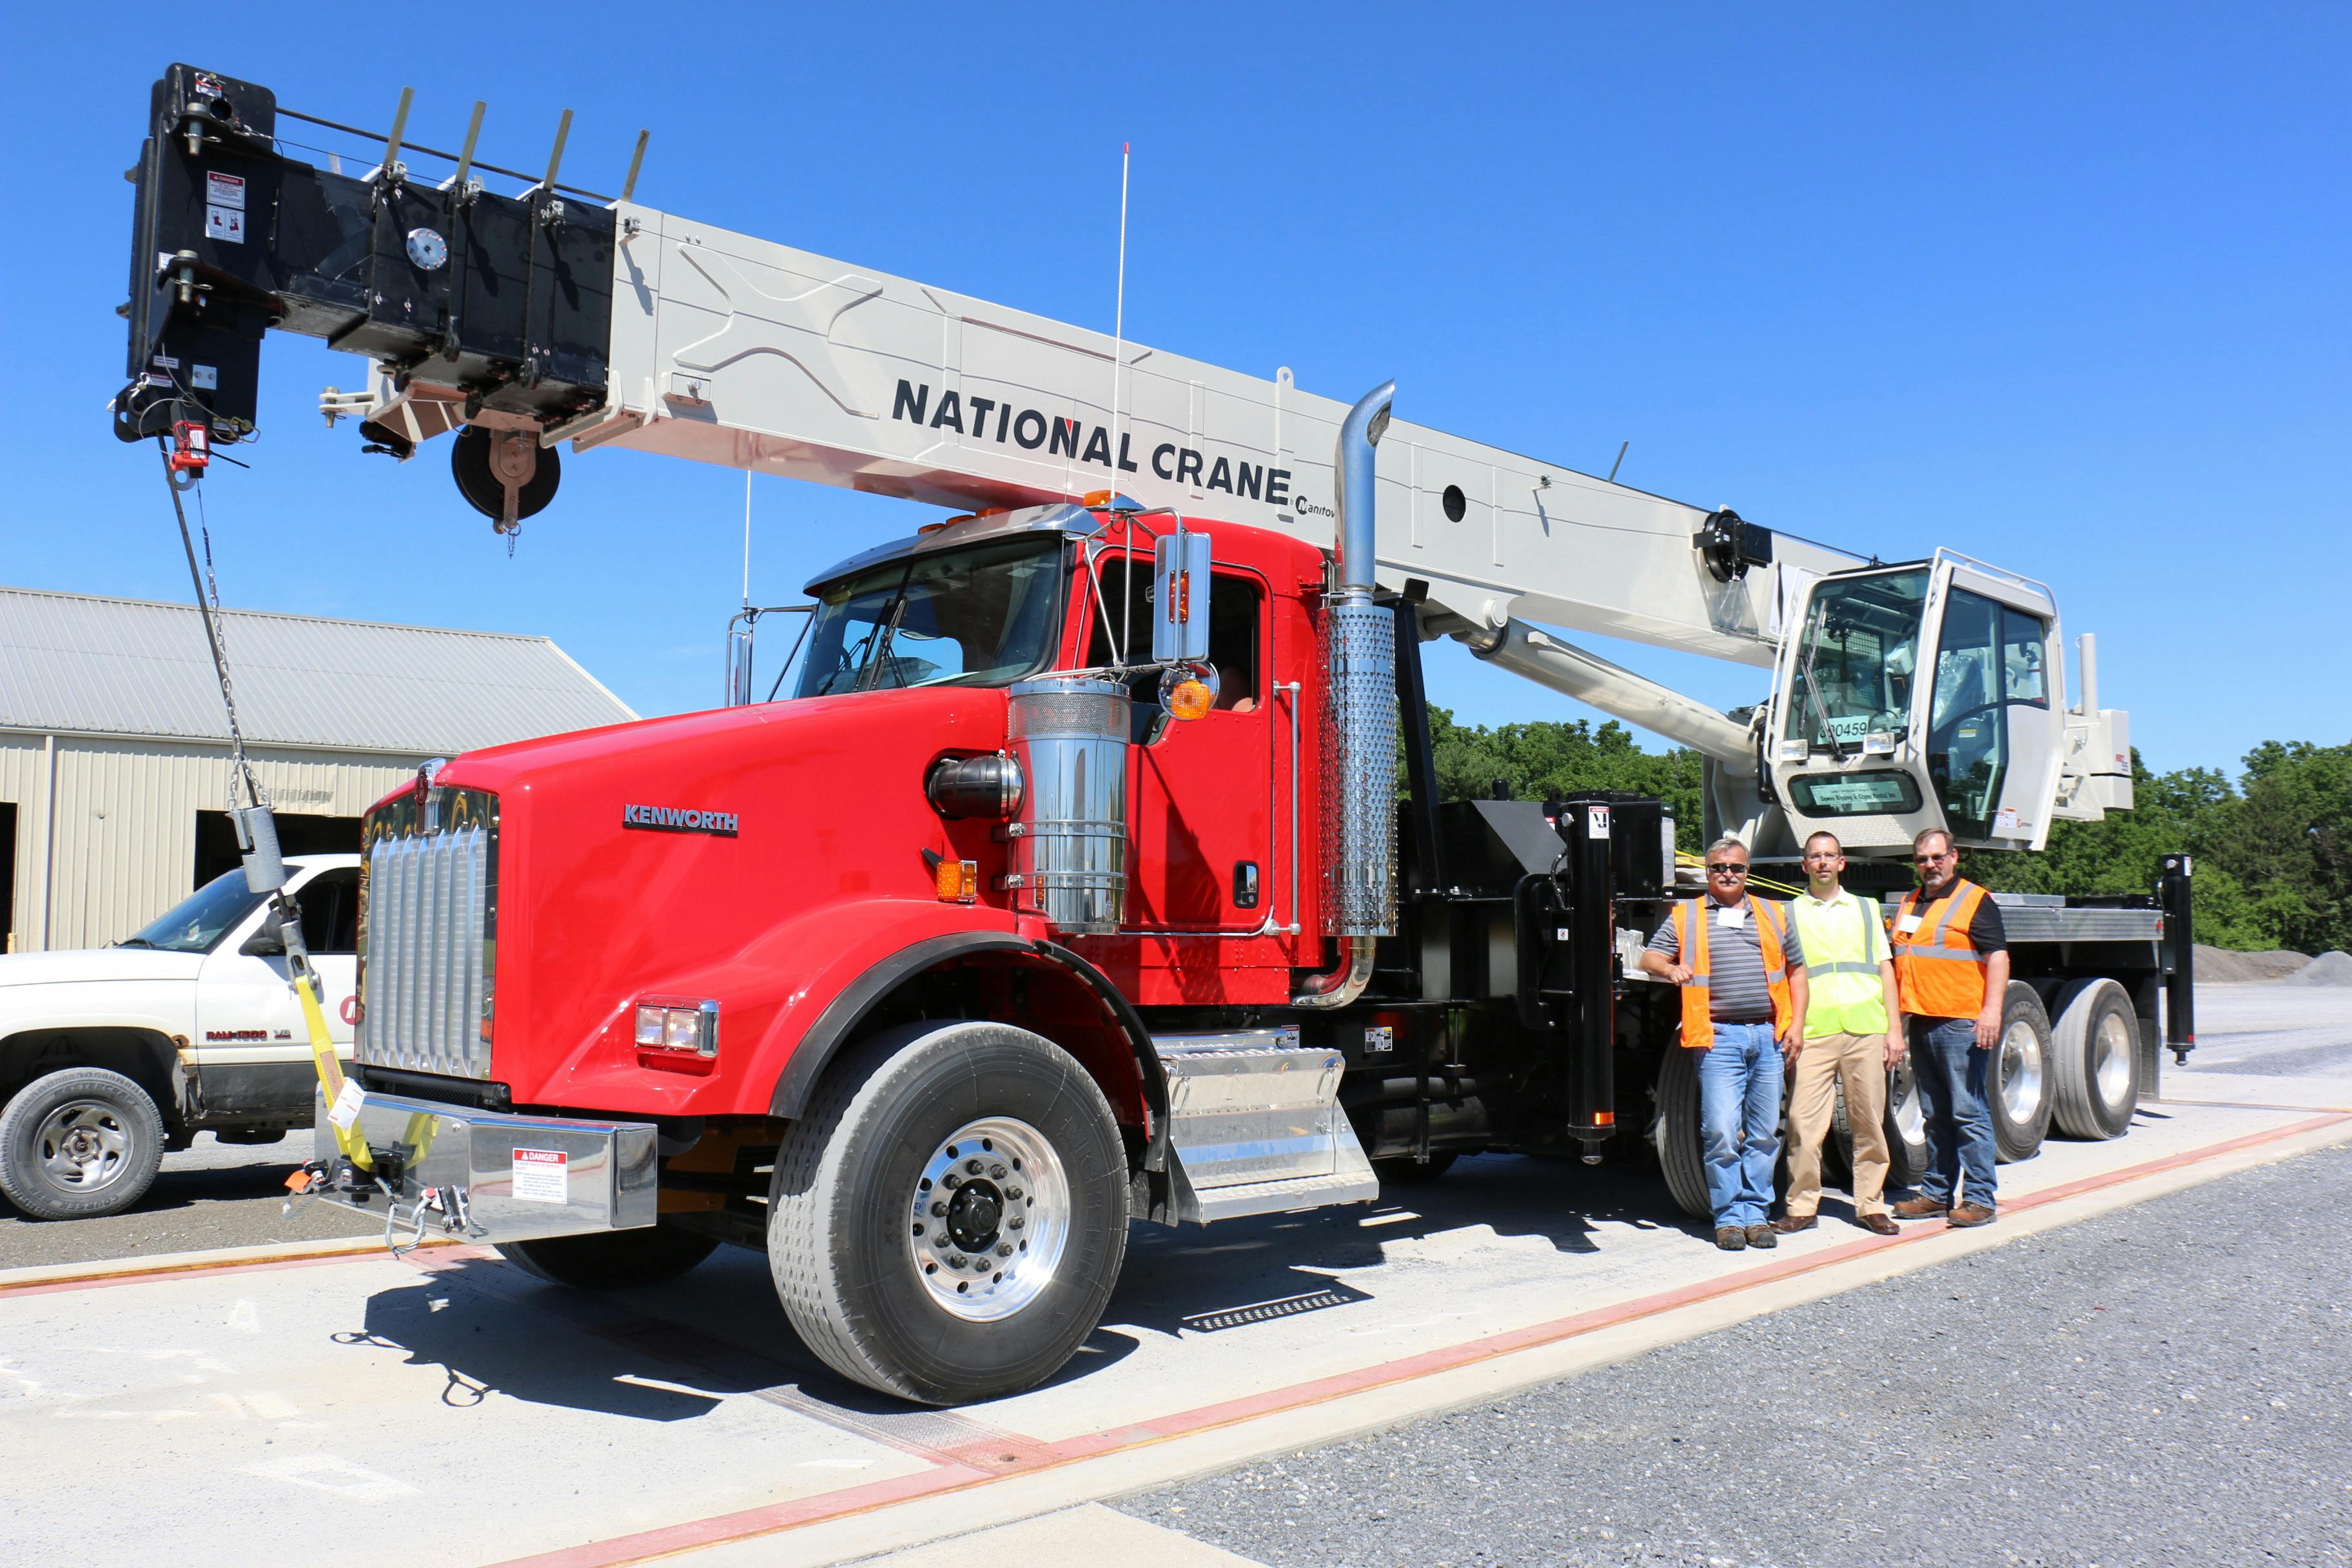 Crane Services Adds National NBT55 Boom Truck to Fleet | Construction News